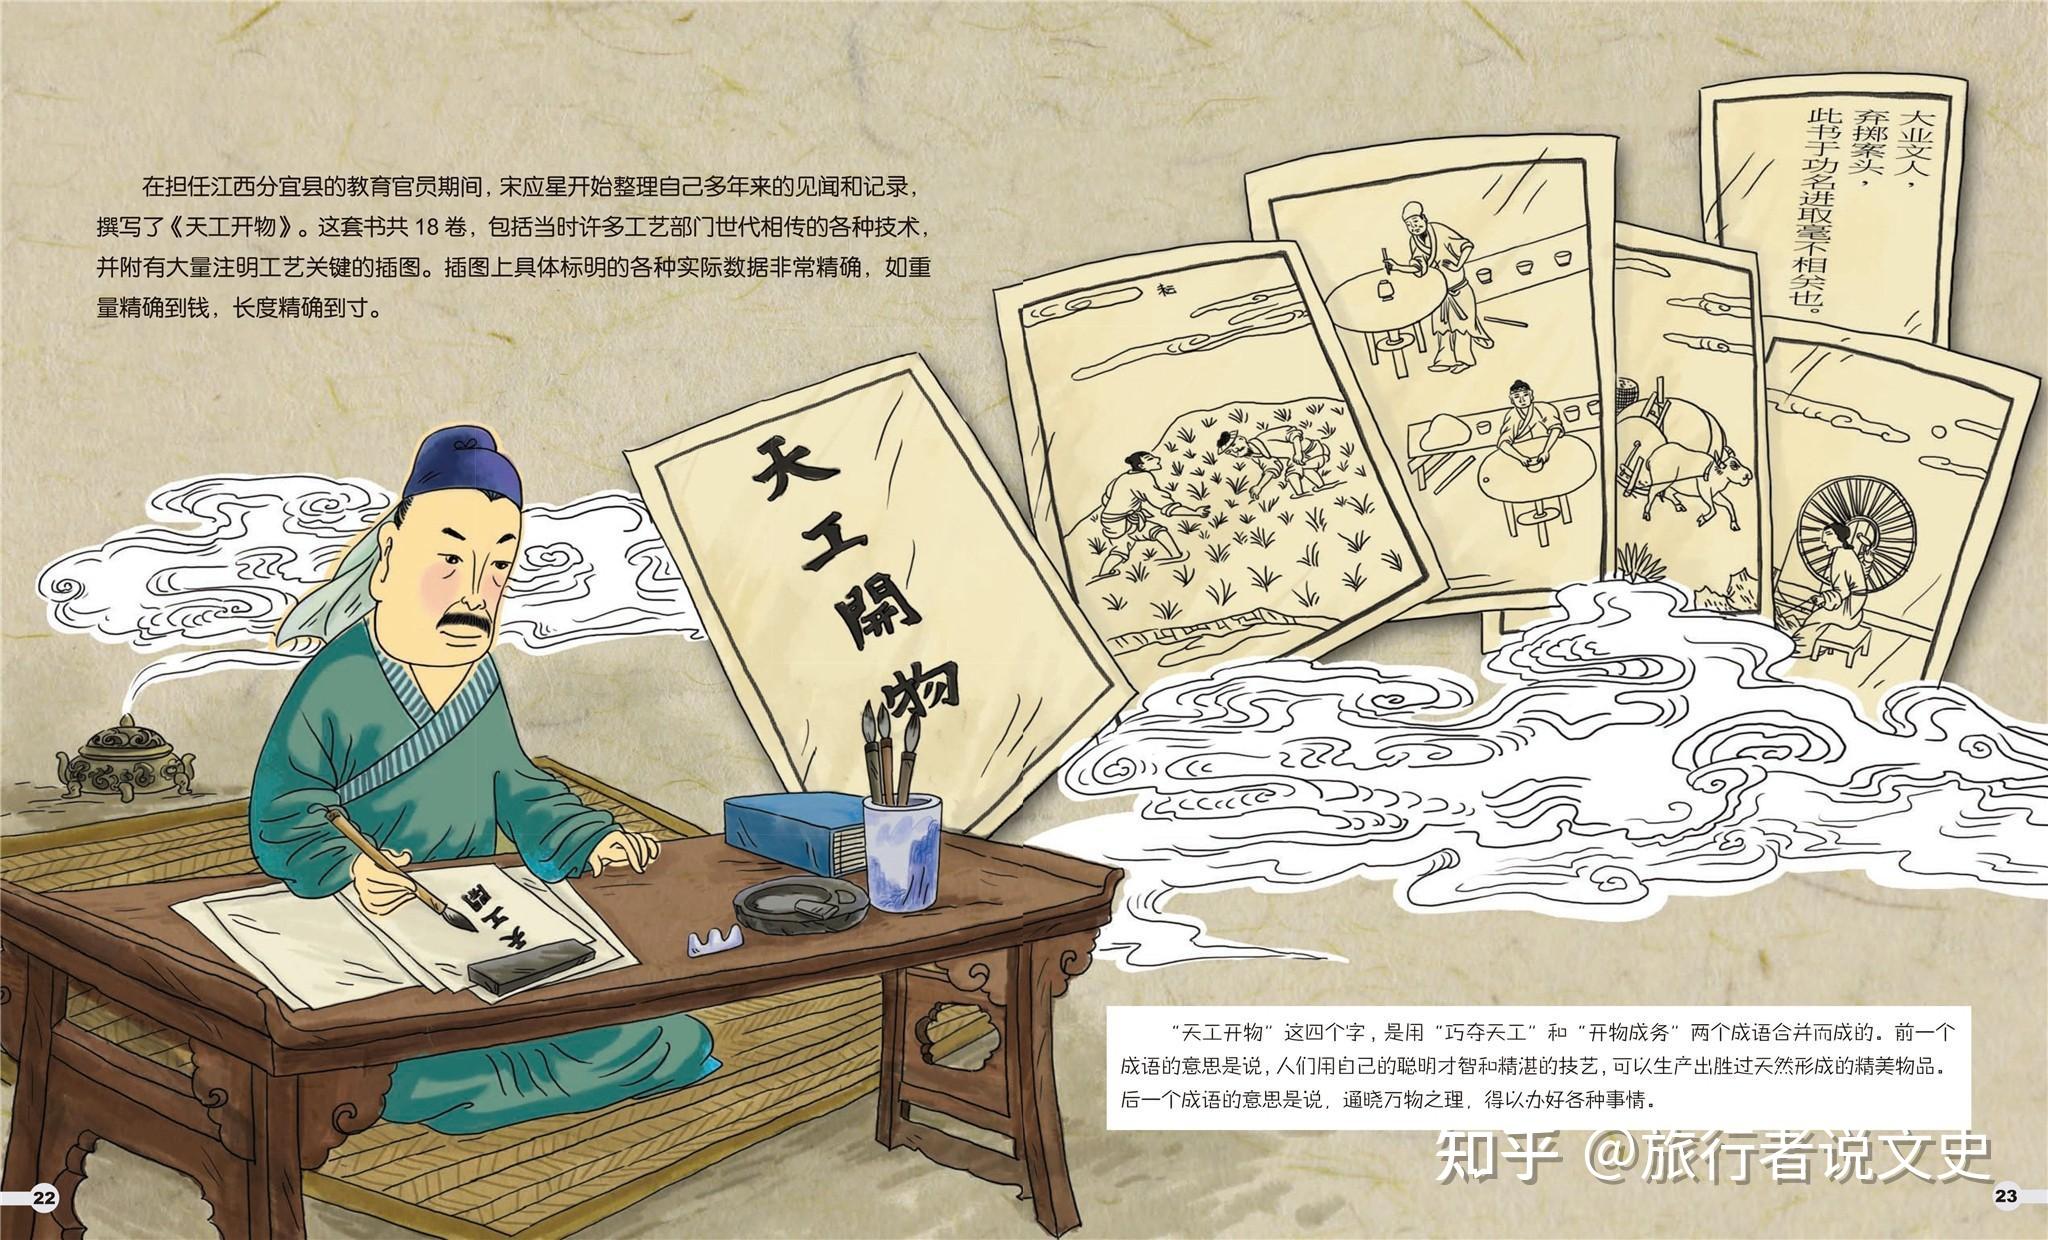 李晨教授设计的第9套邮票《中国古代科学家及著作（一）》纪念邮票将于2018年5月26日首发-鲁迅美术学院